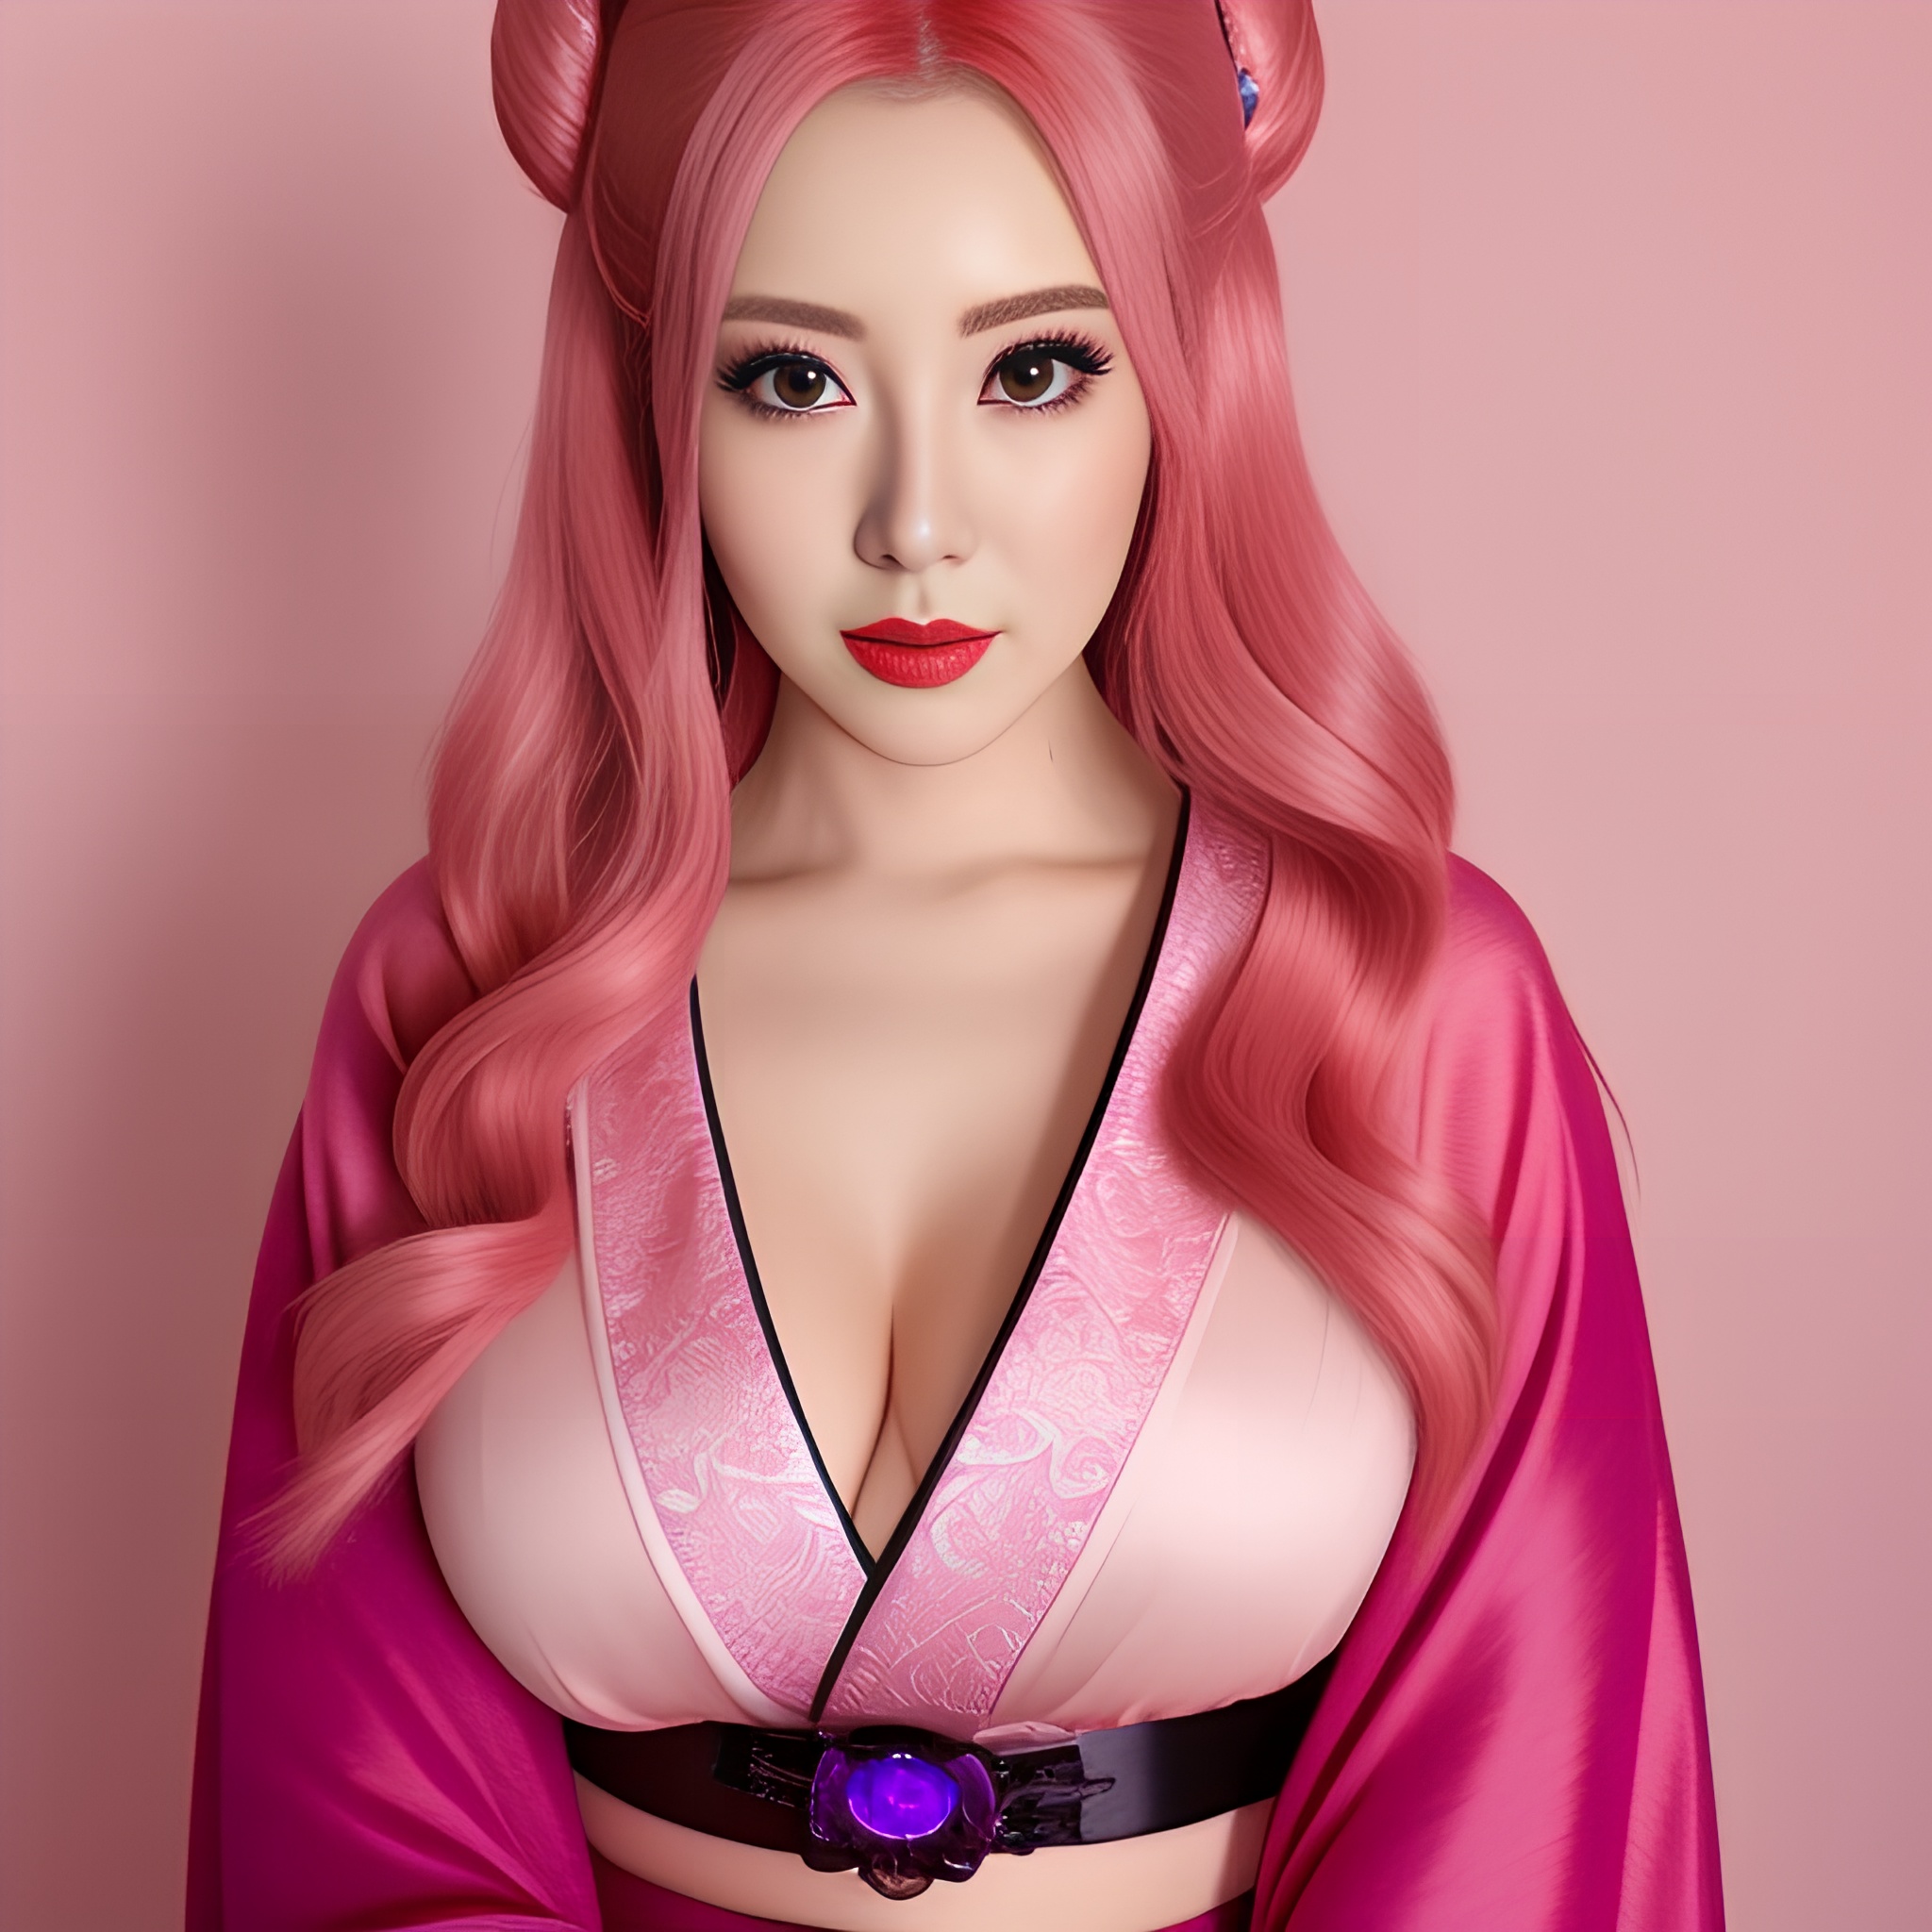 pink hair hot woman